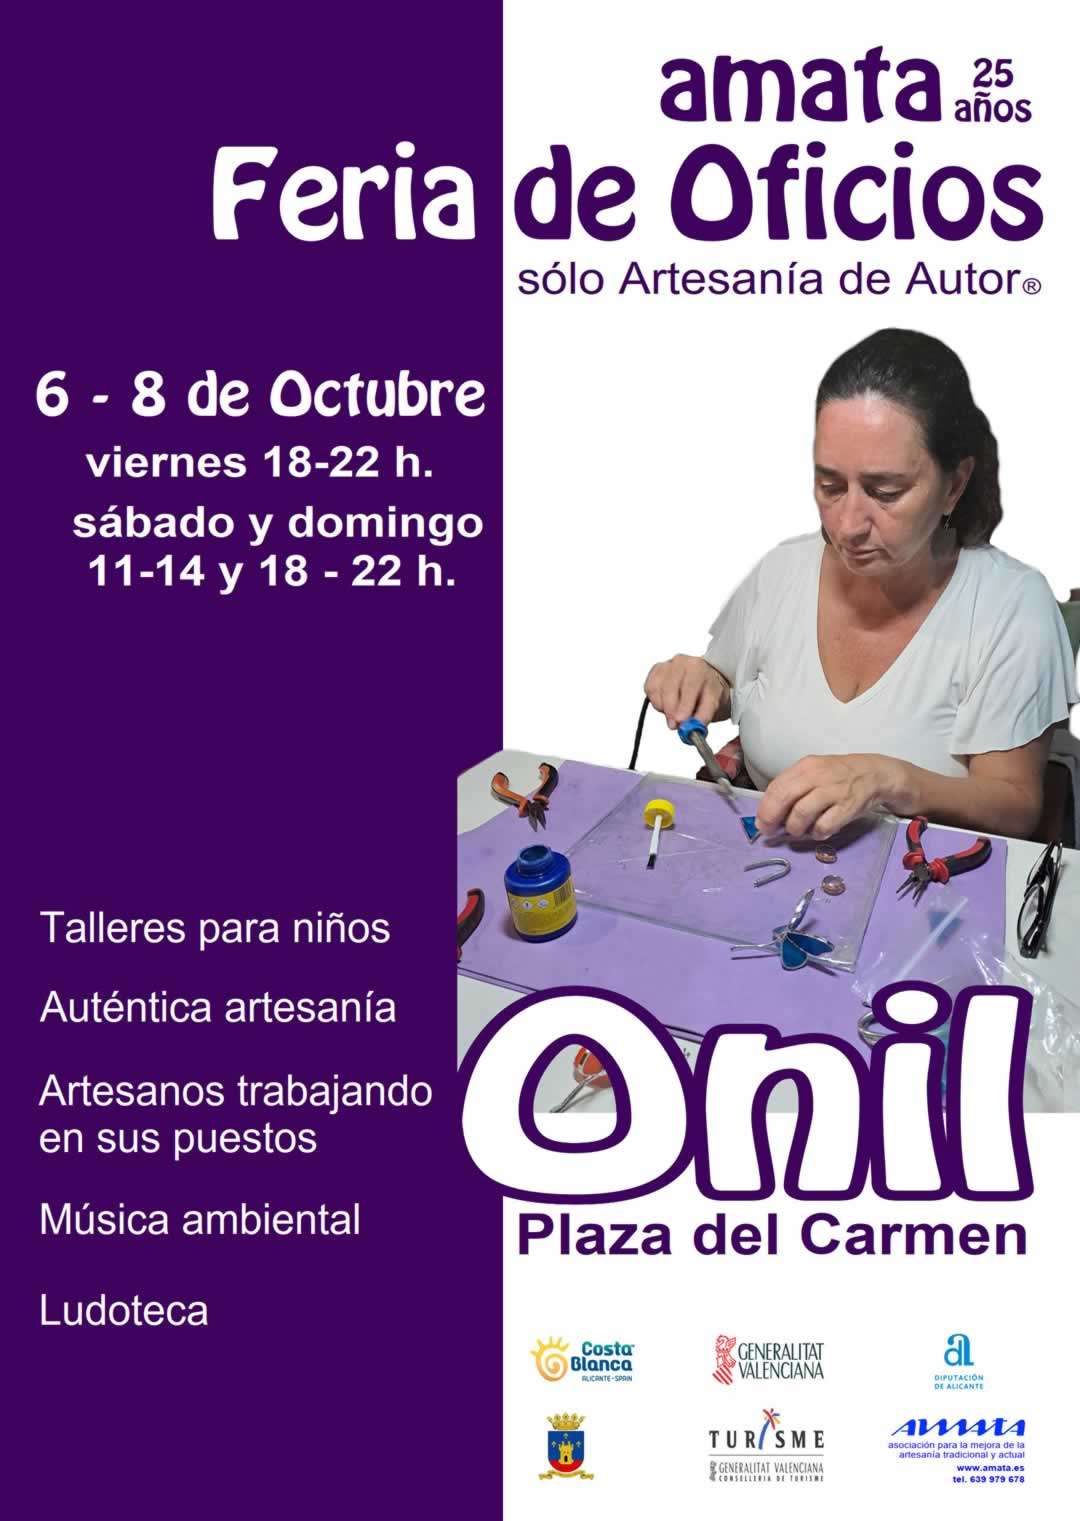 mercadosmedievales.net - Feria de Artesanía de Autor® 2023 en Onil Alicante 2023